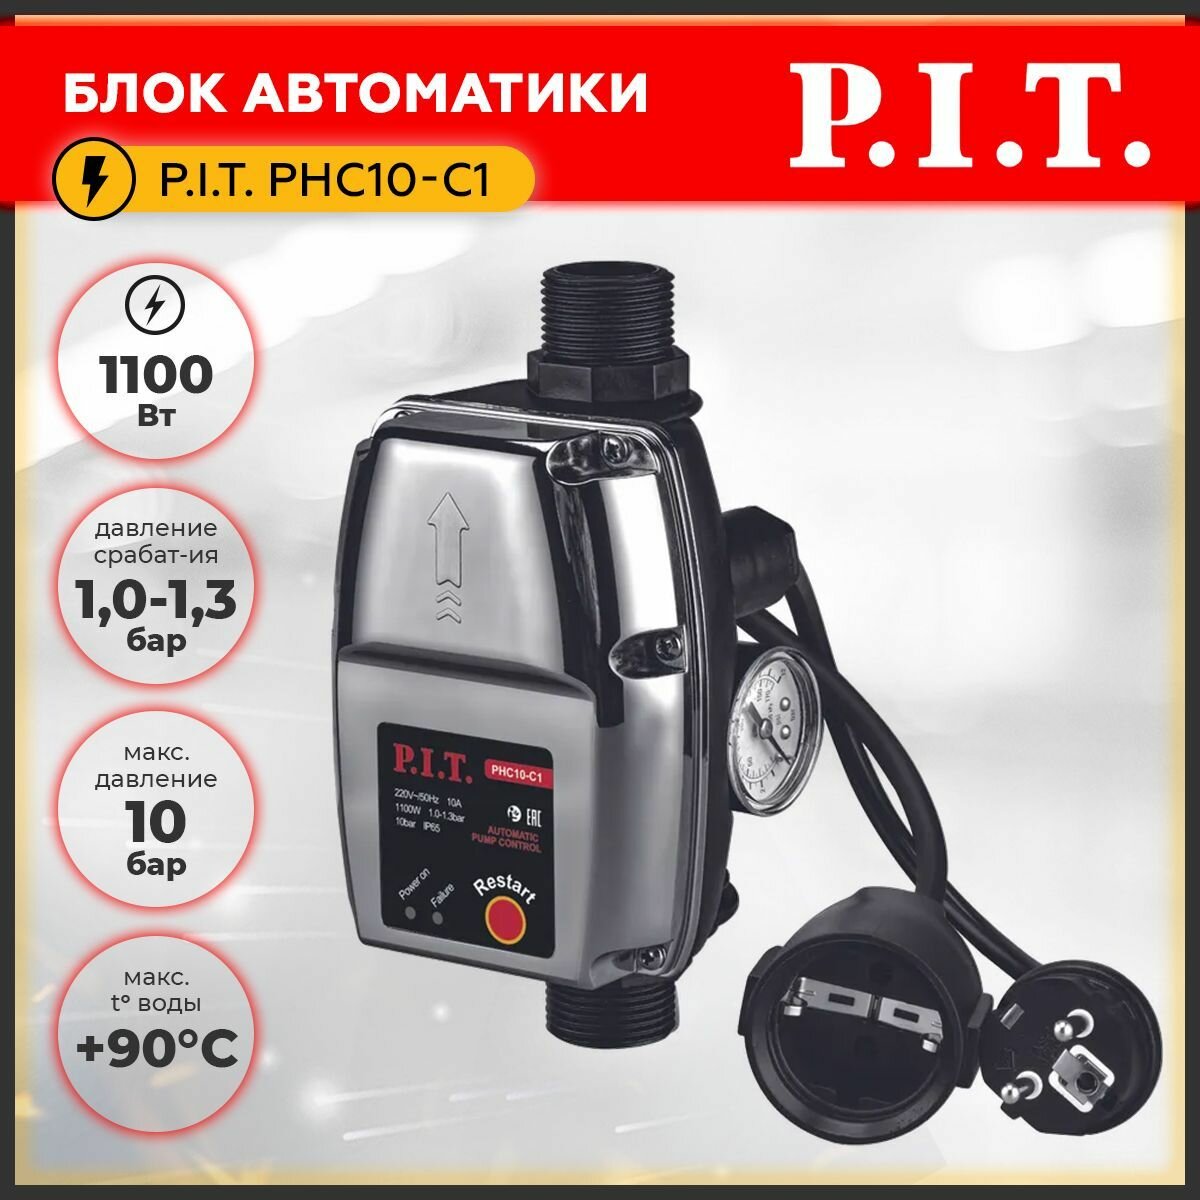 Блок автоматики P.I.T. PHC10-C1, 1100Вт, пусковое давление 1,0-1,3 бар, максимальное давление 10 бар +90С